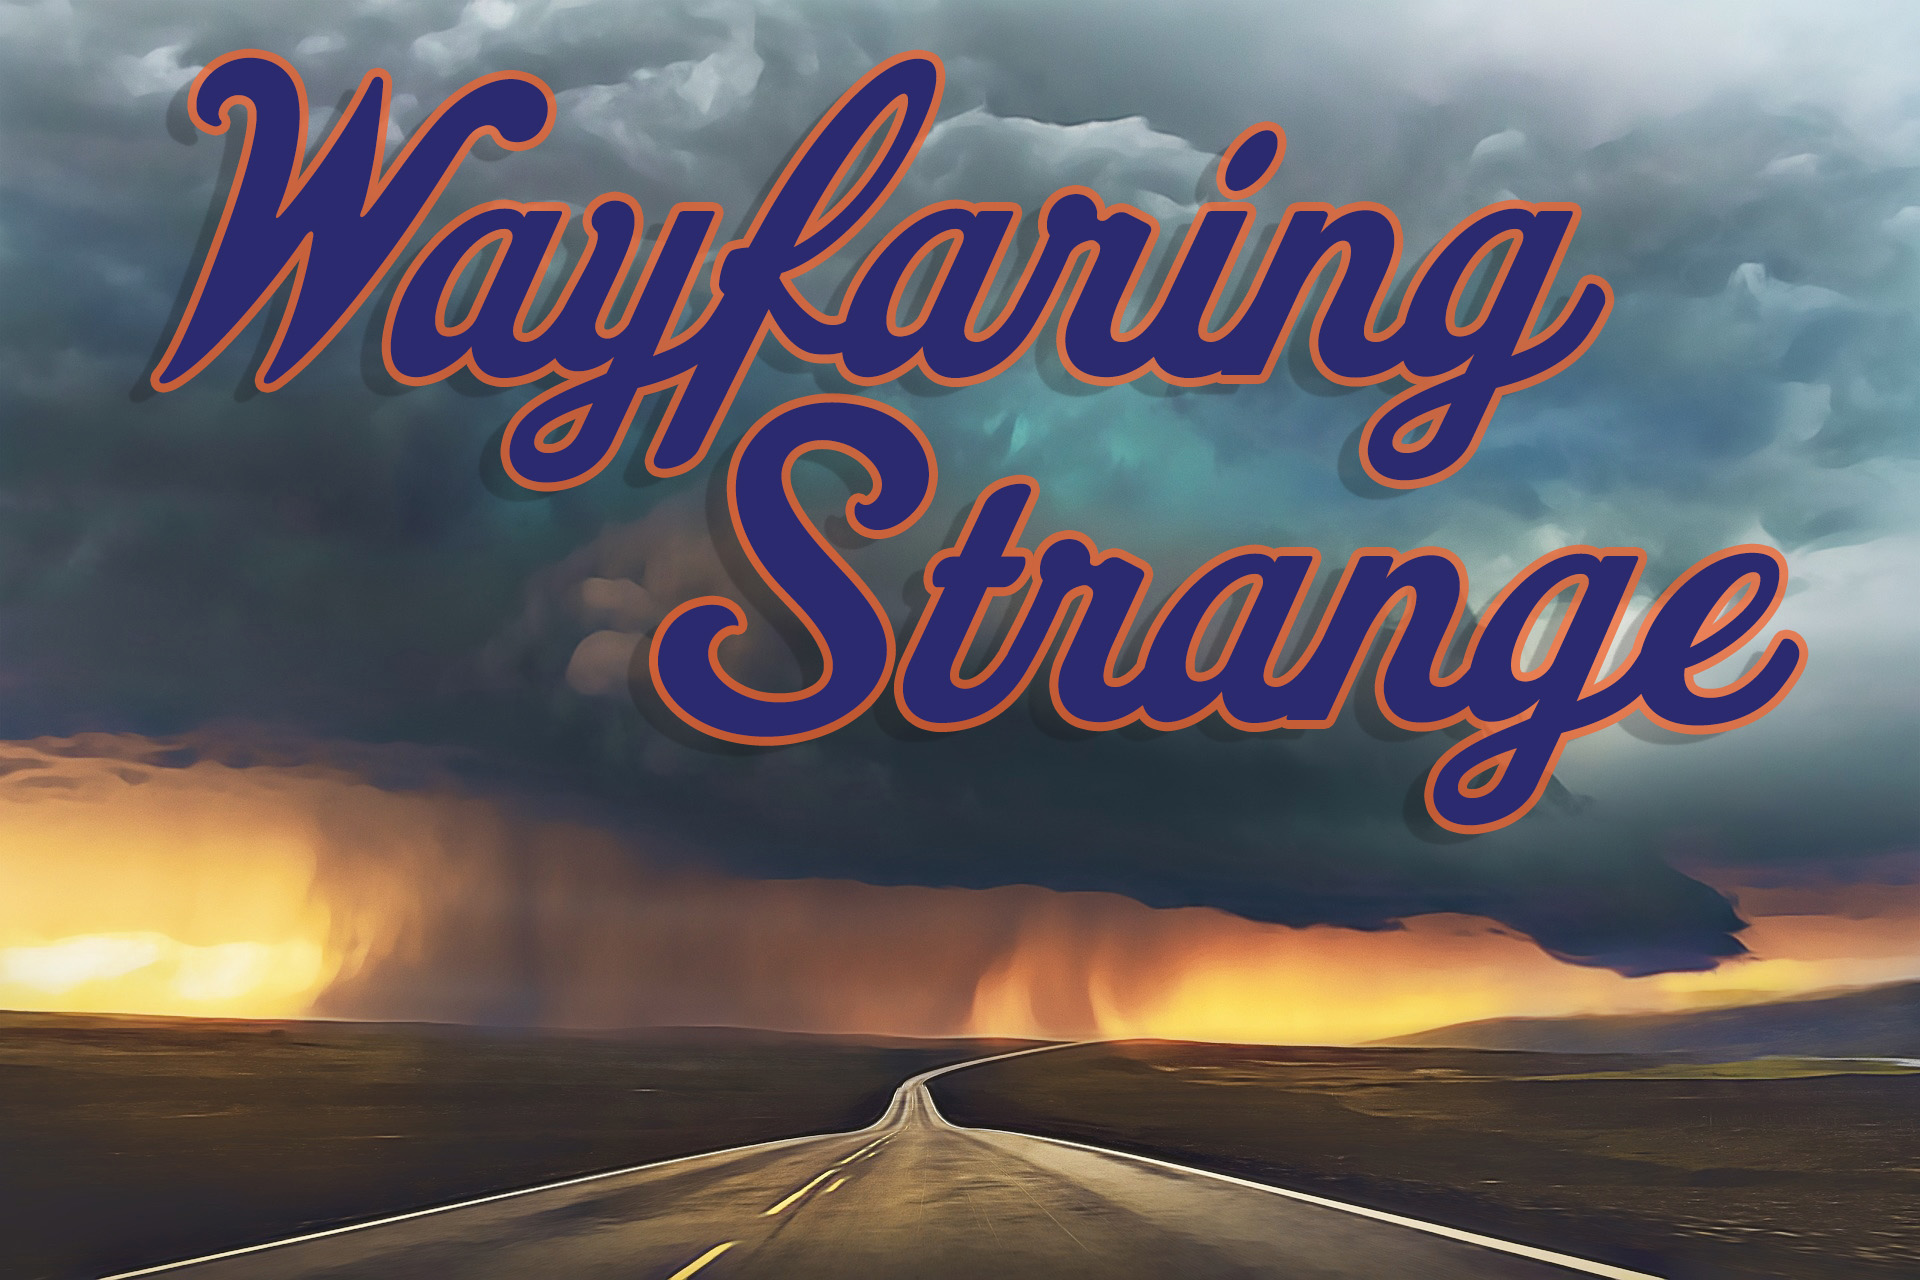 Wayfaring Strange